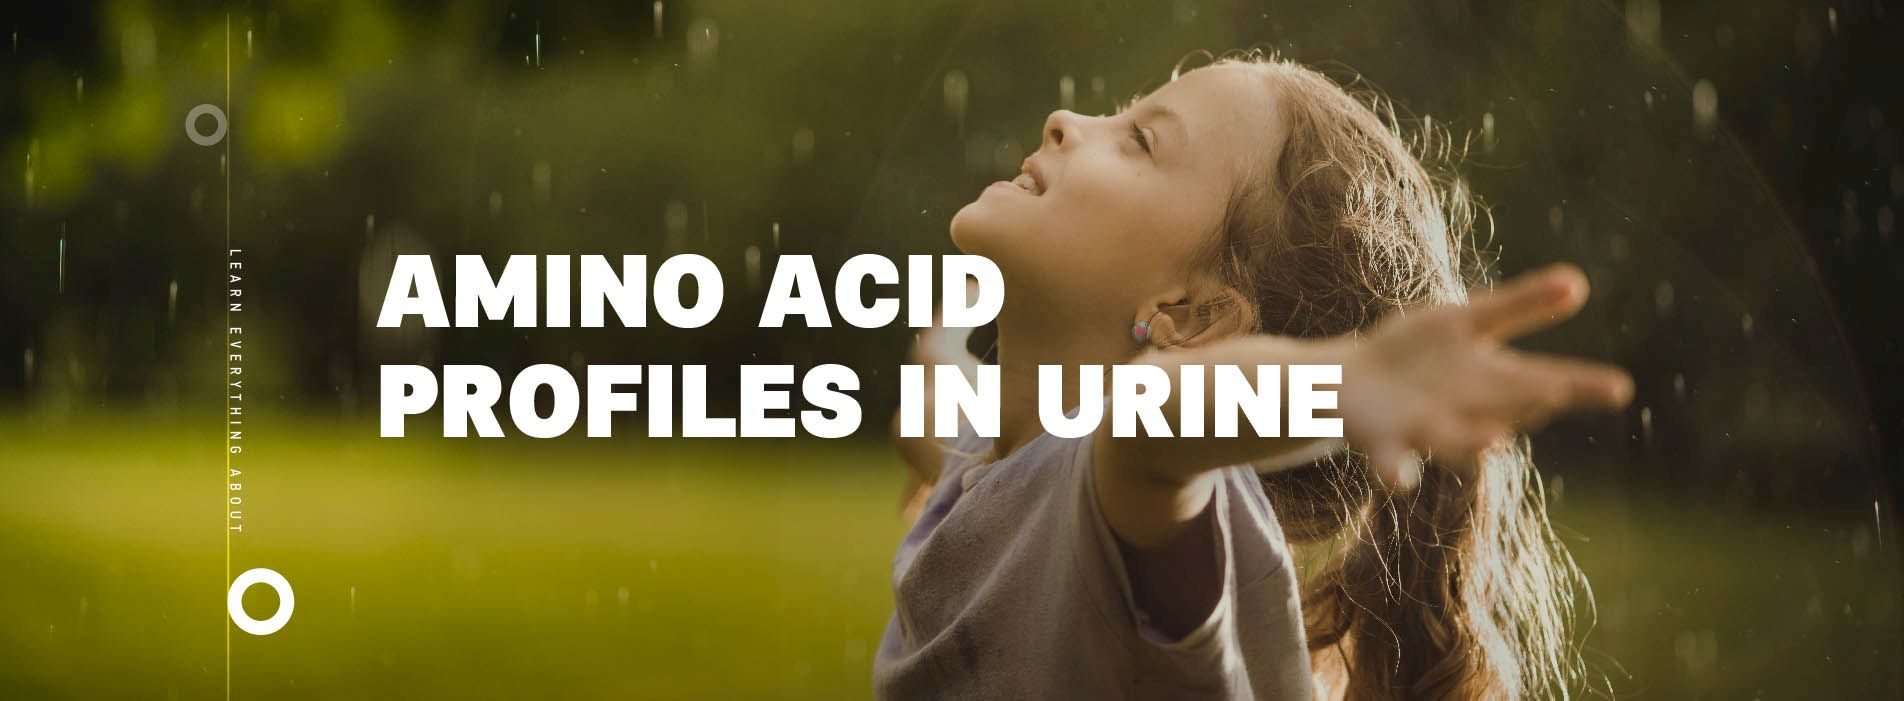 Amino acid profiles in urine